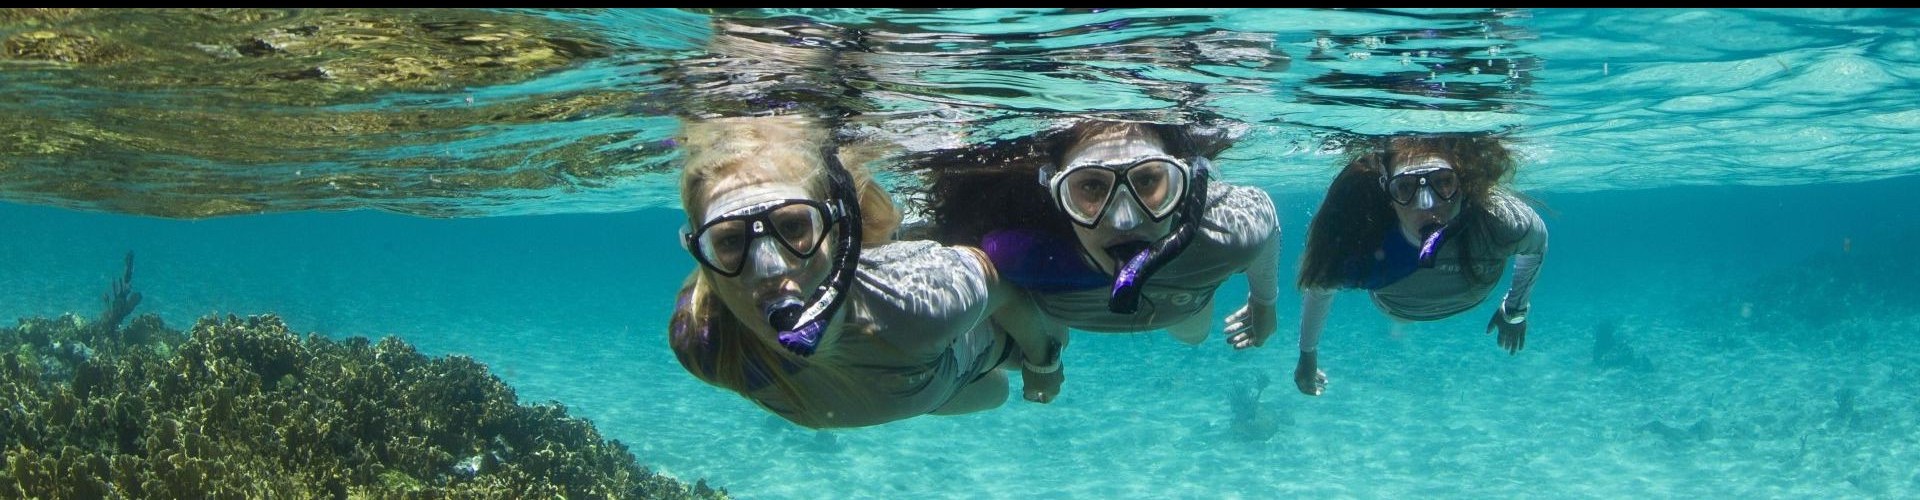 Snorkeling aqualung